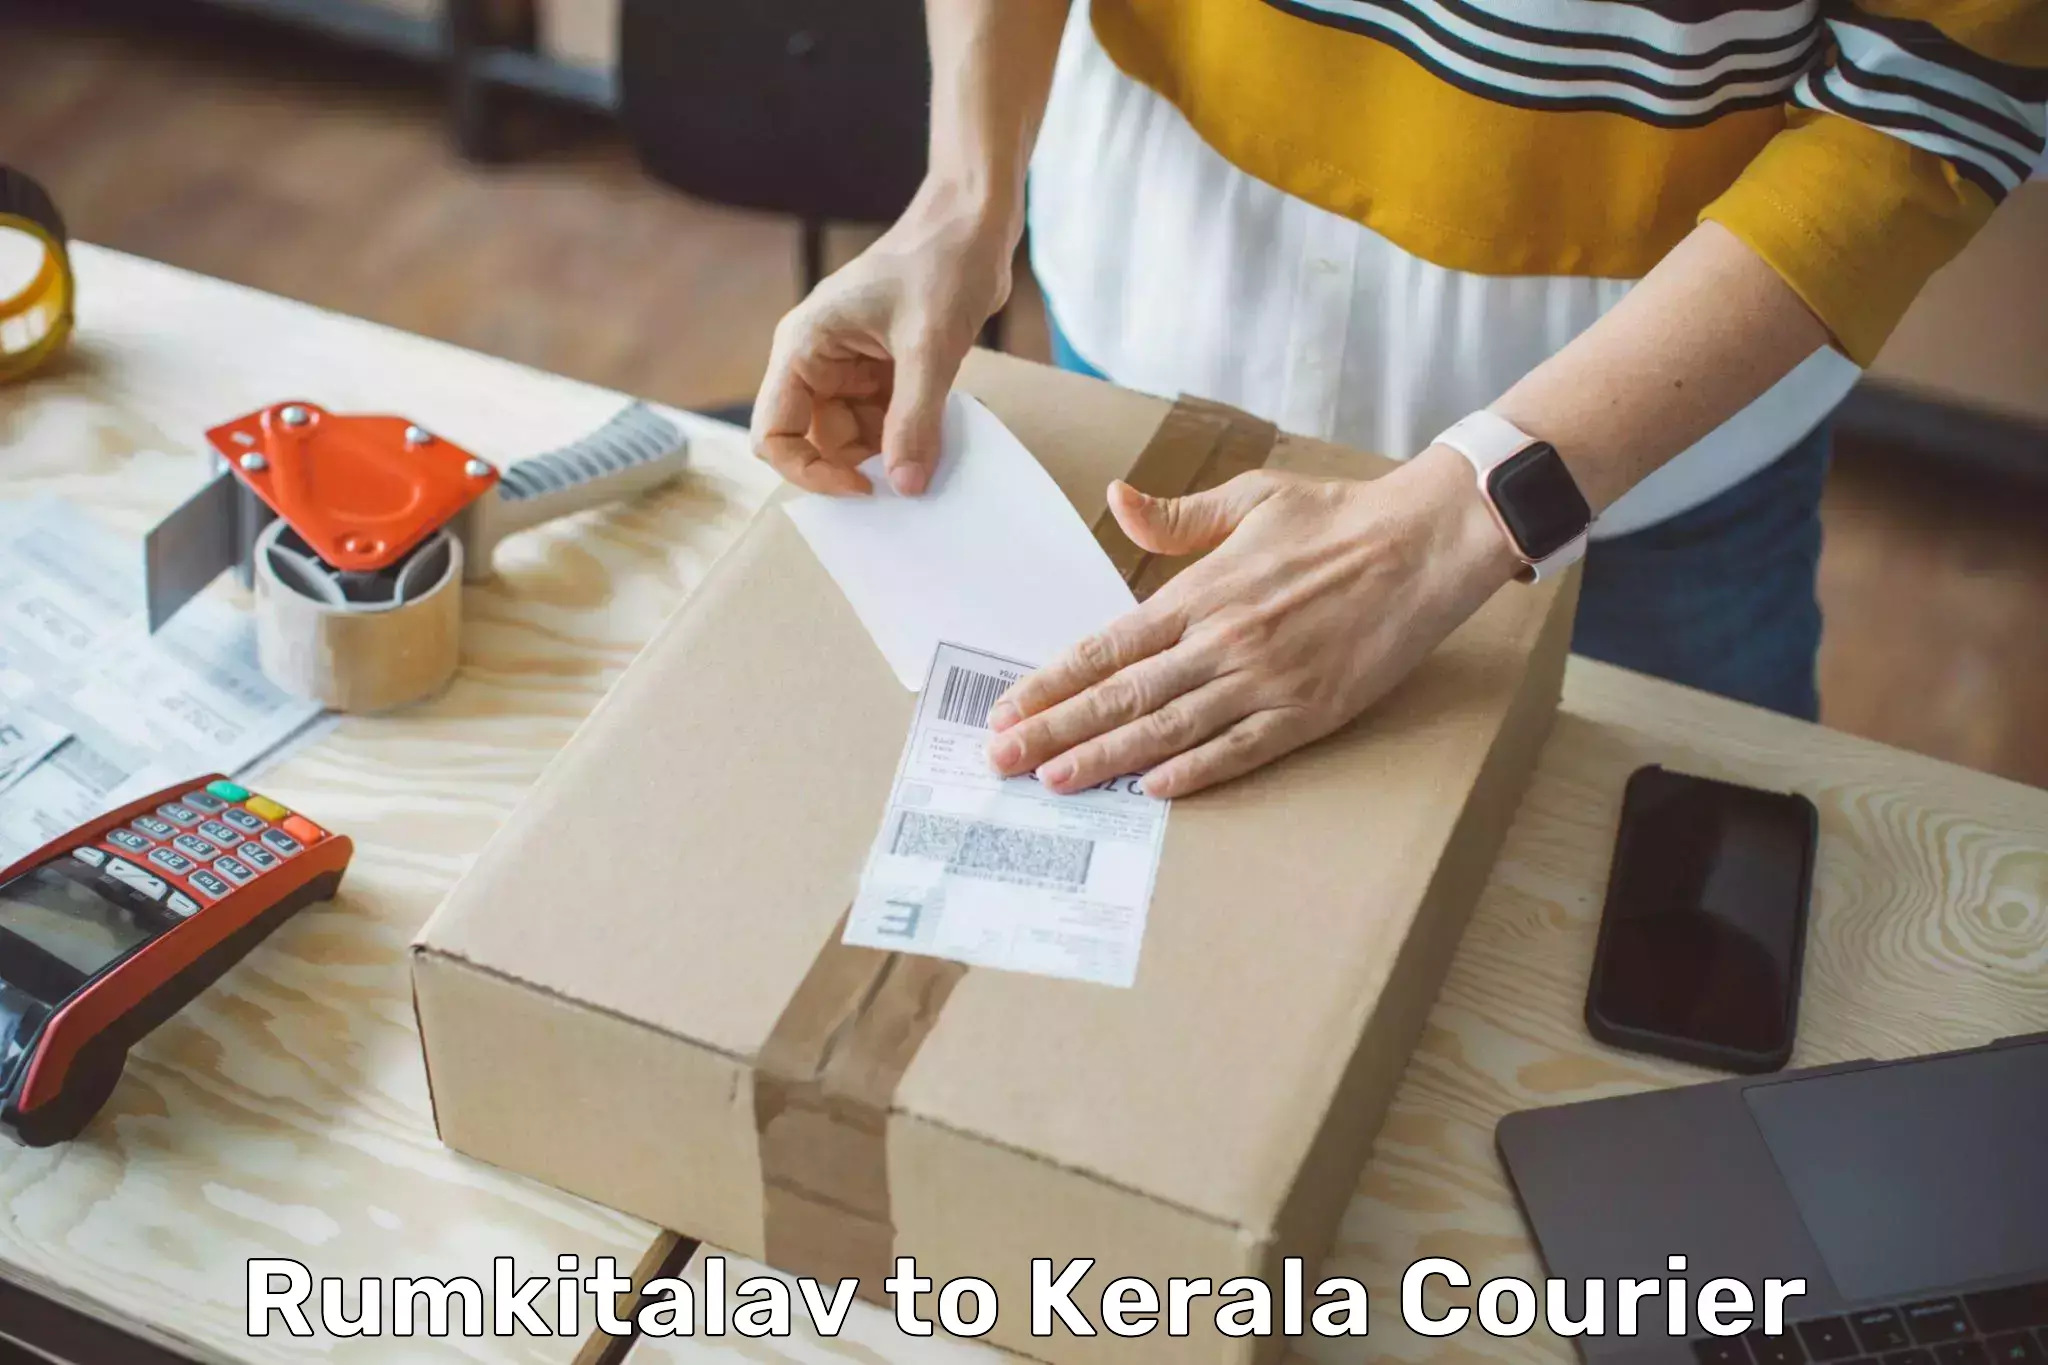 Easy return solutions in Rumkitalav to Kerala